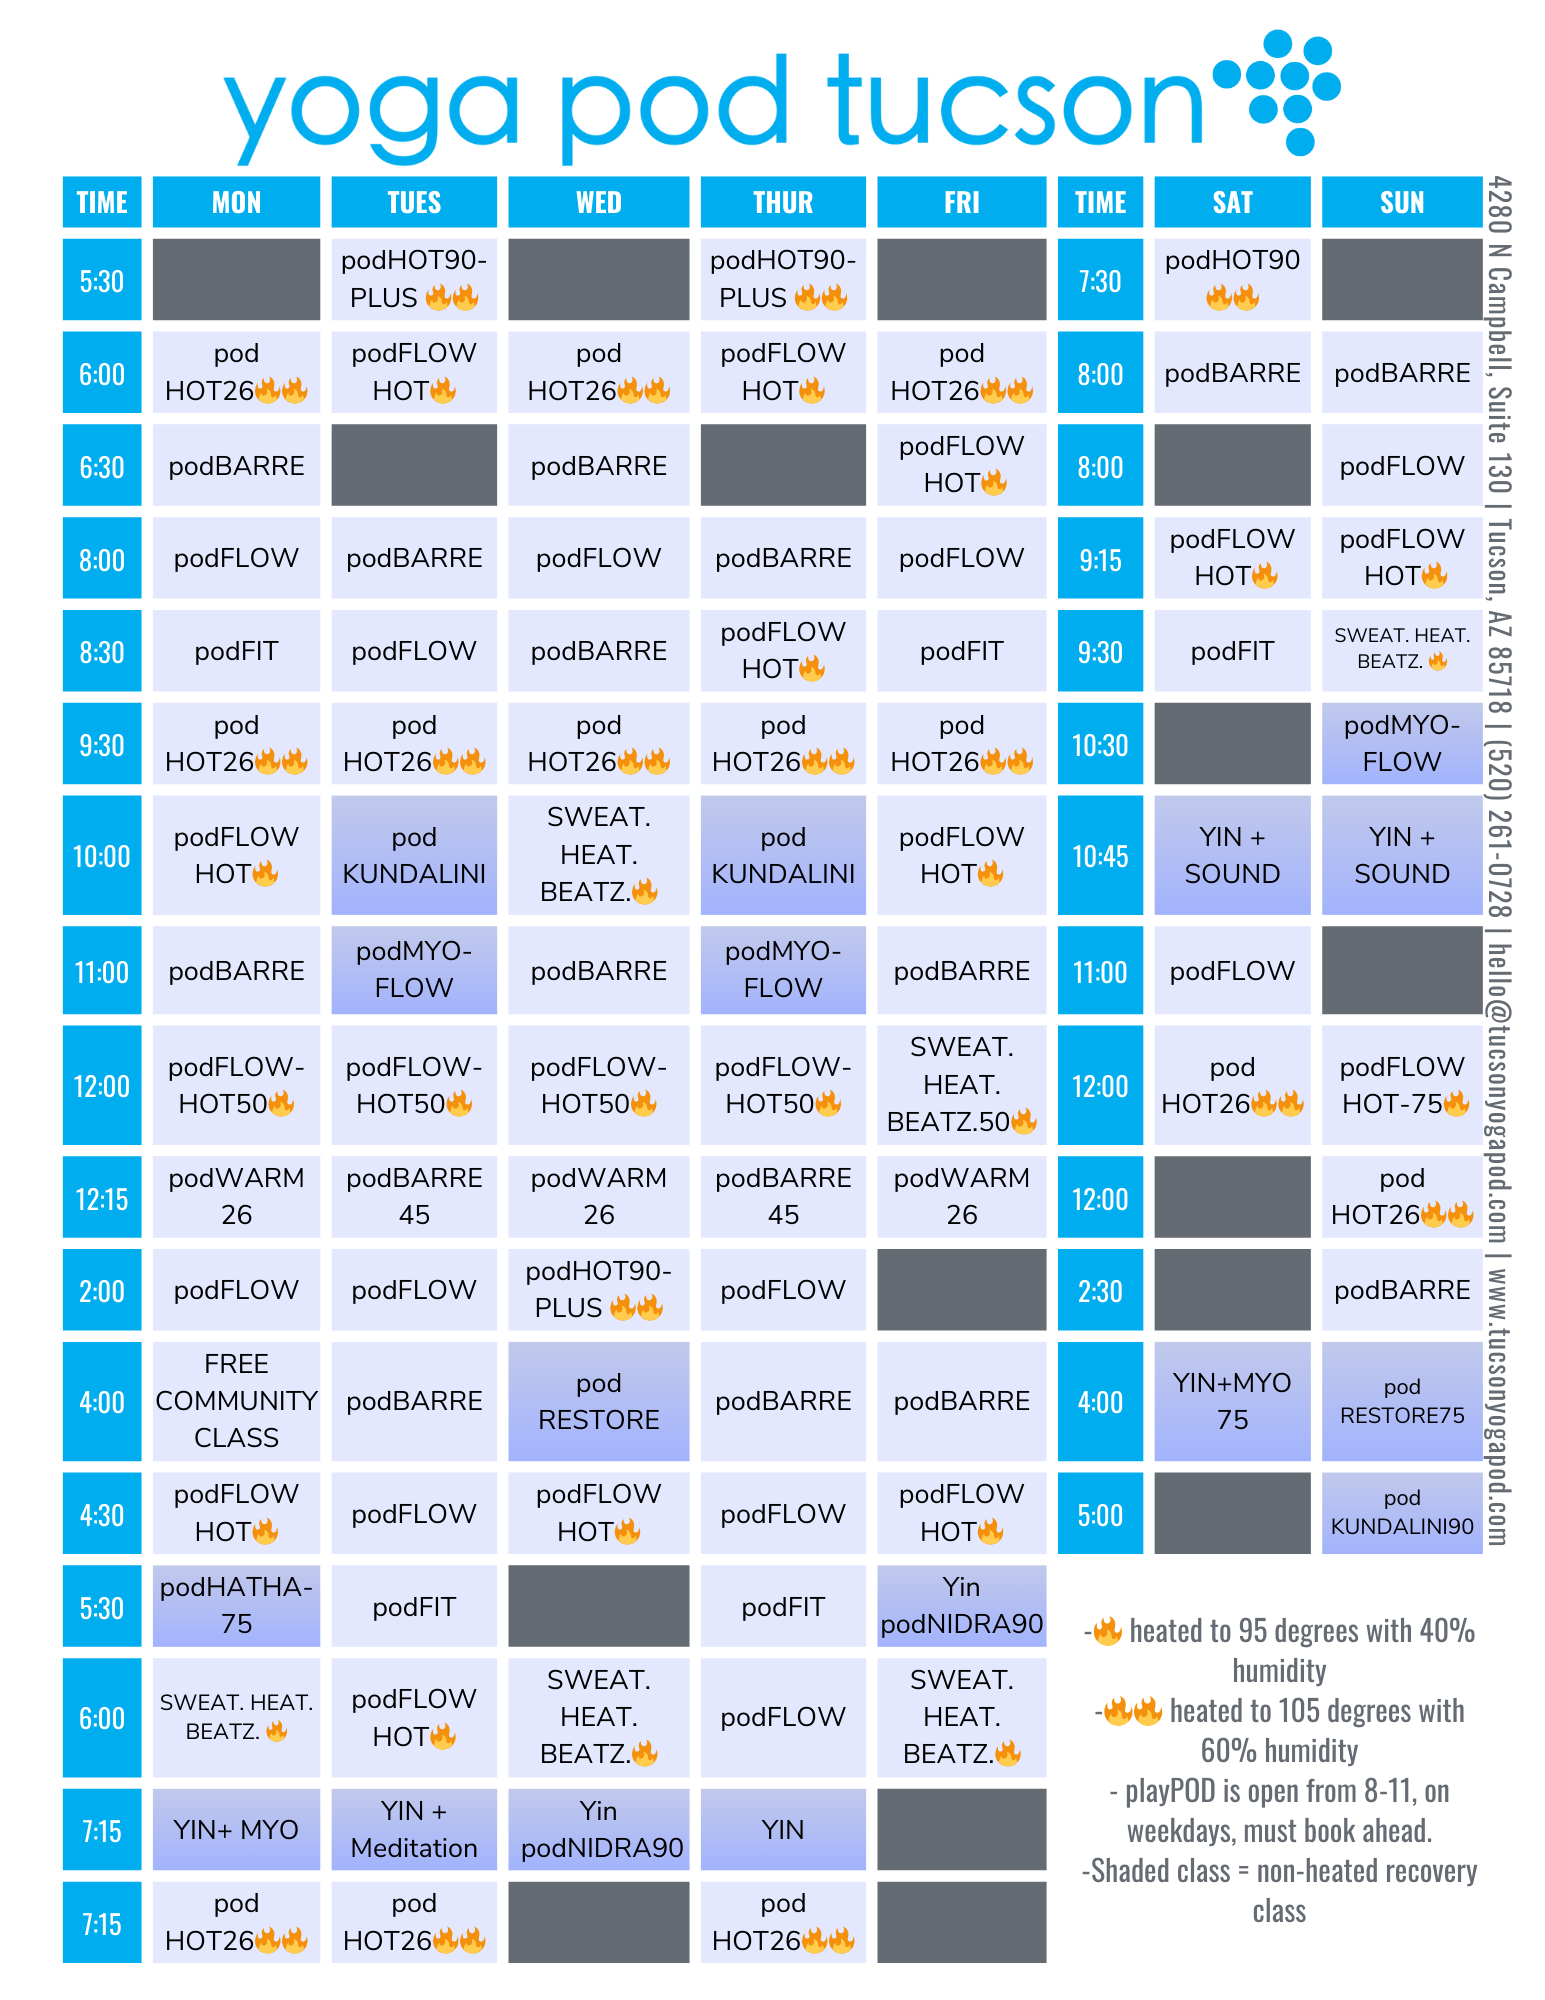 Yoga Class Schedule